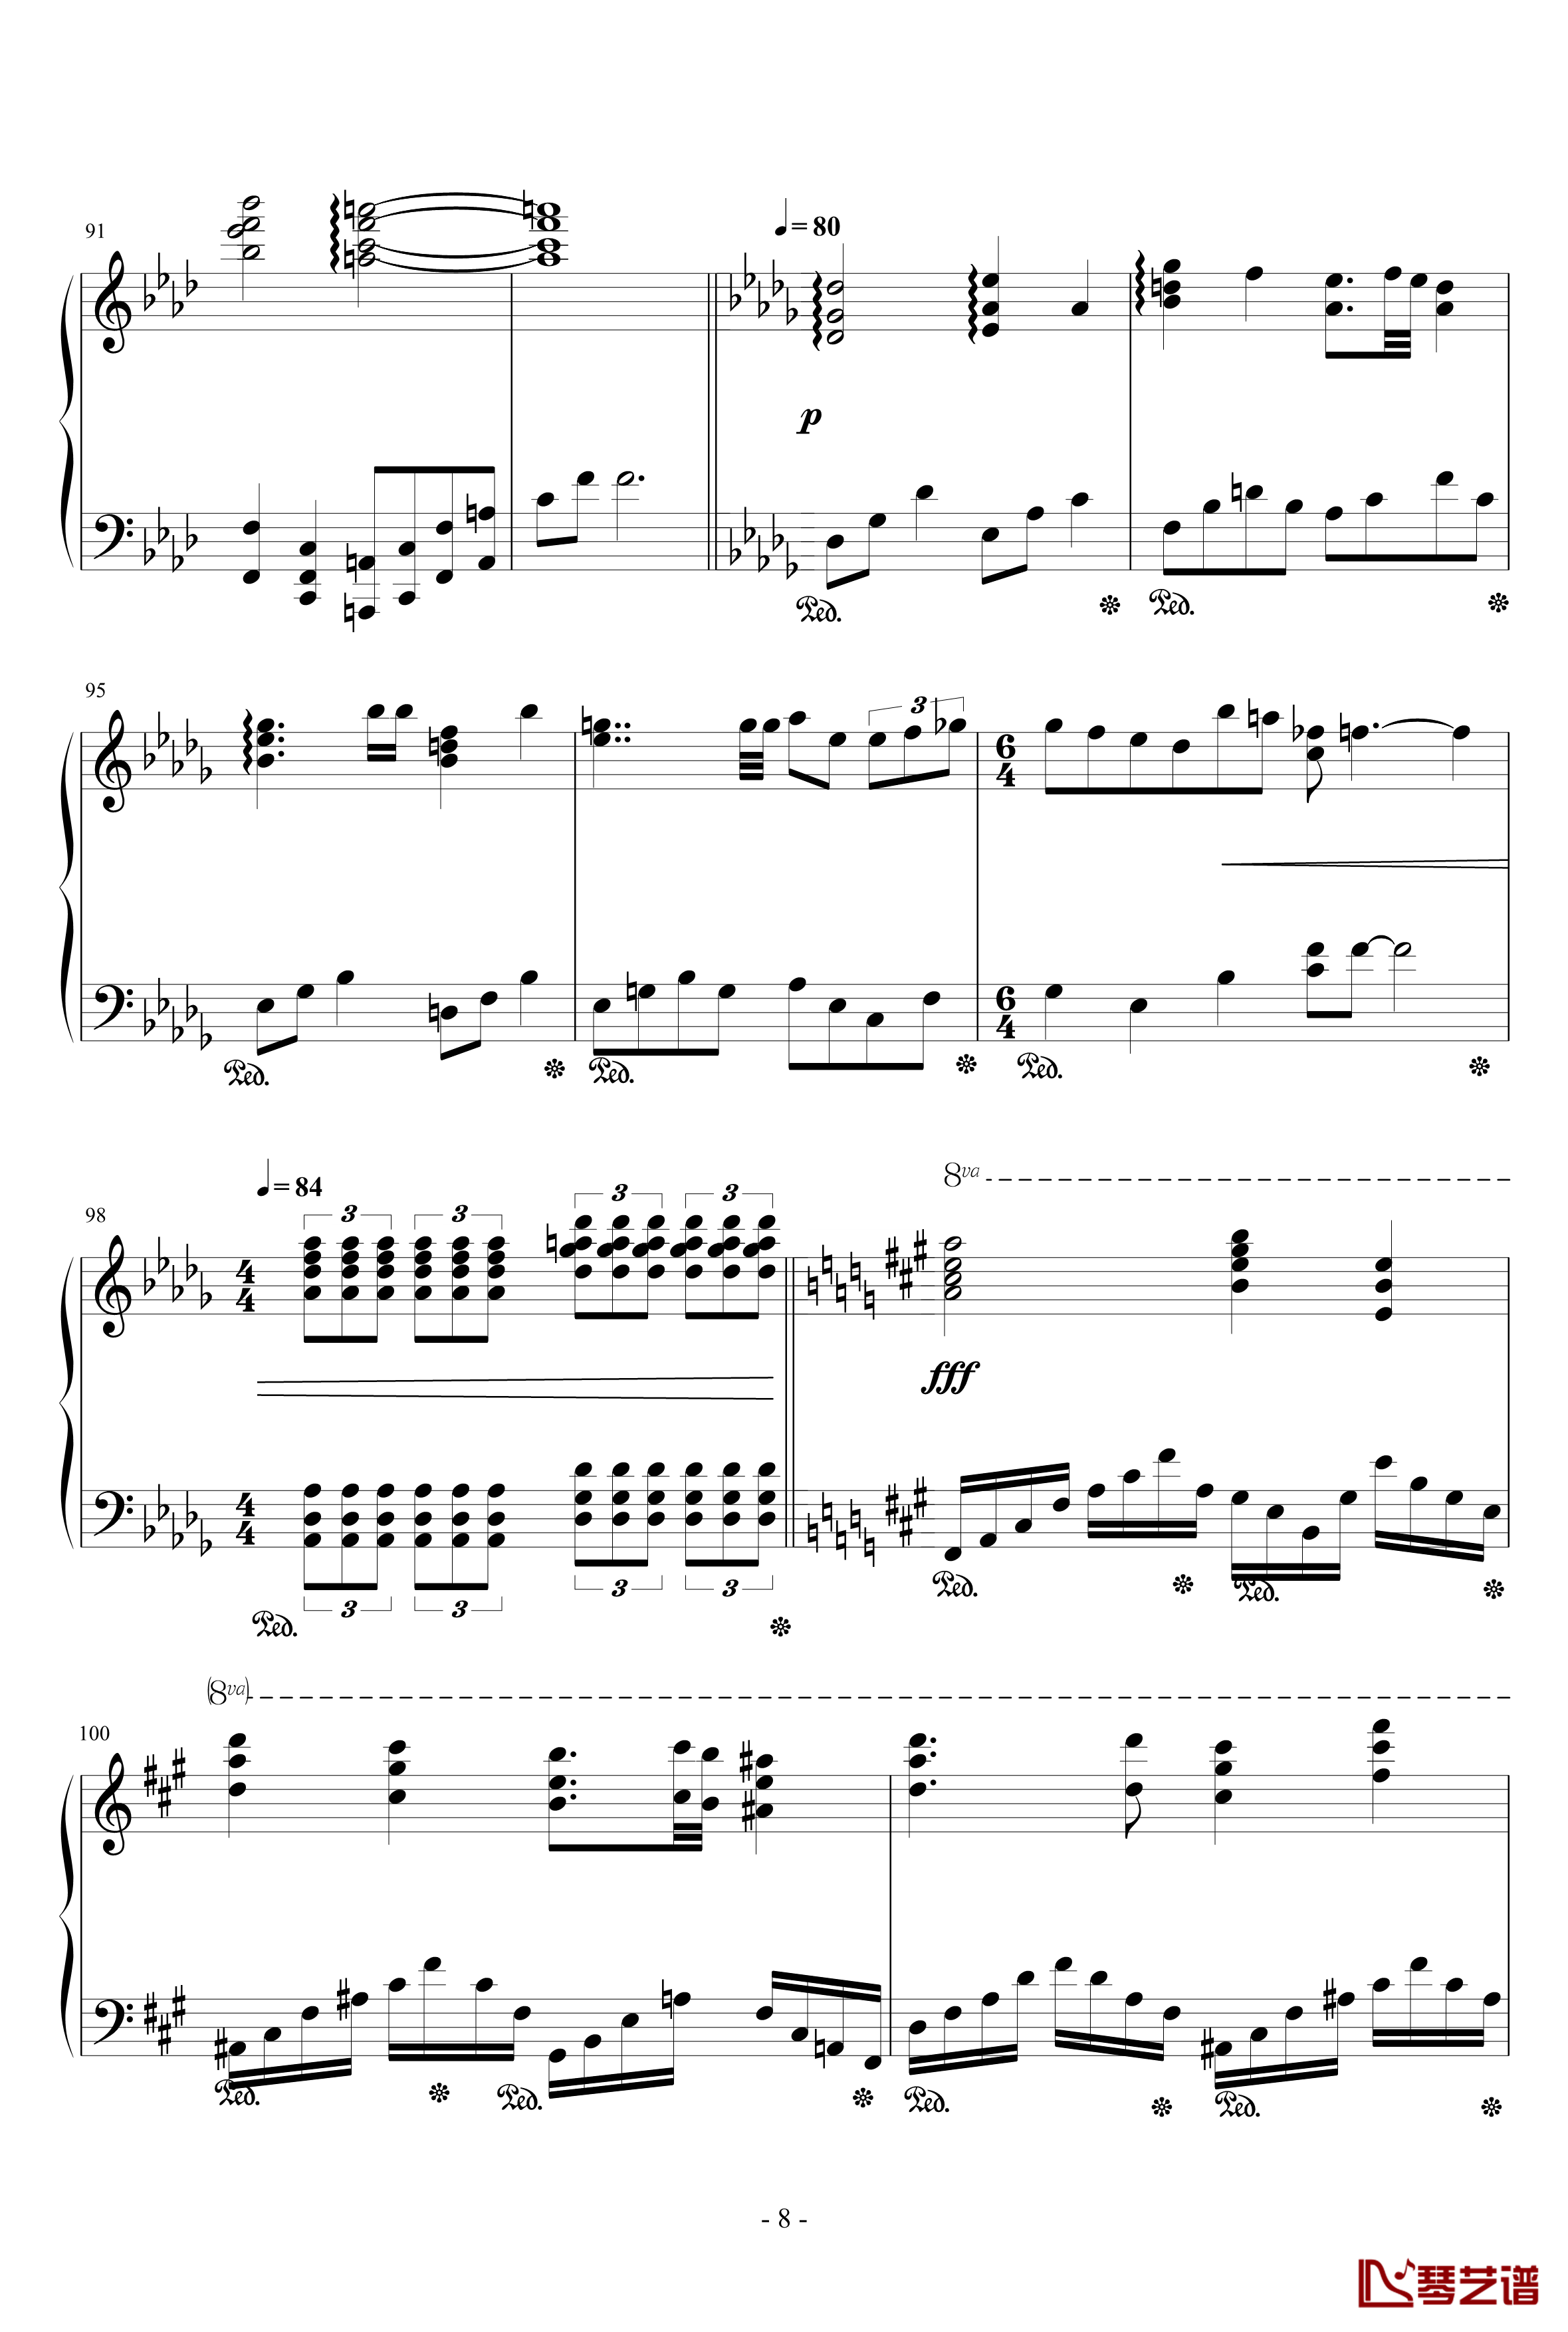 甲铁城的卡巴内利OP钢琴谱-完整版-泽野弘之8